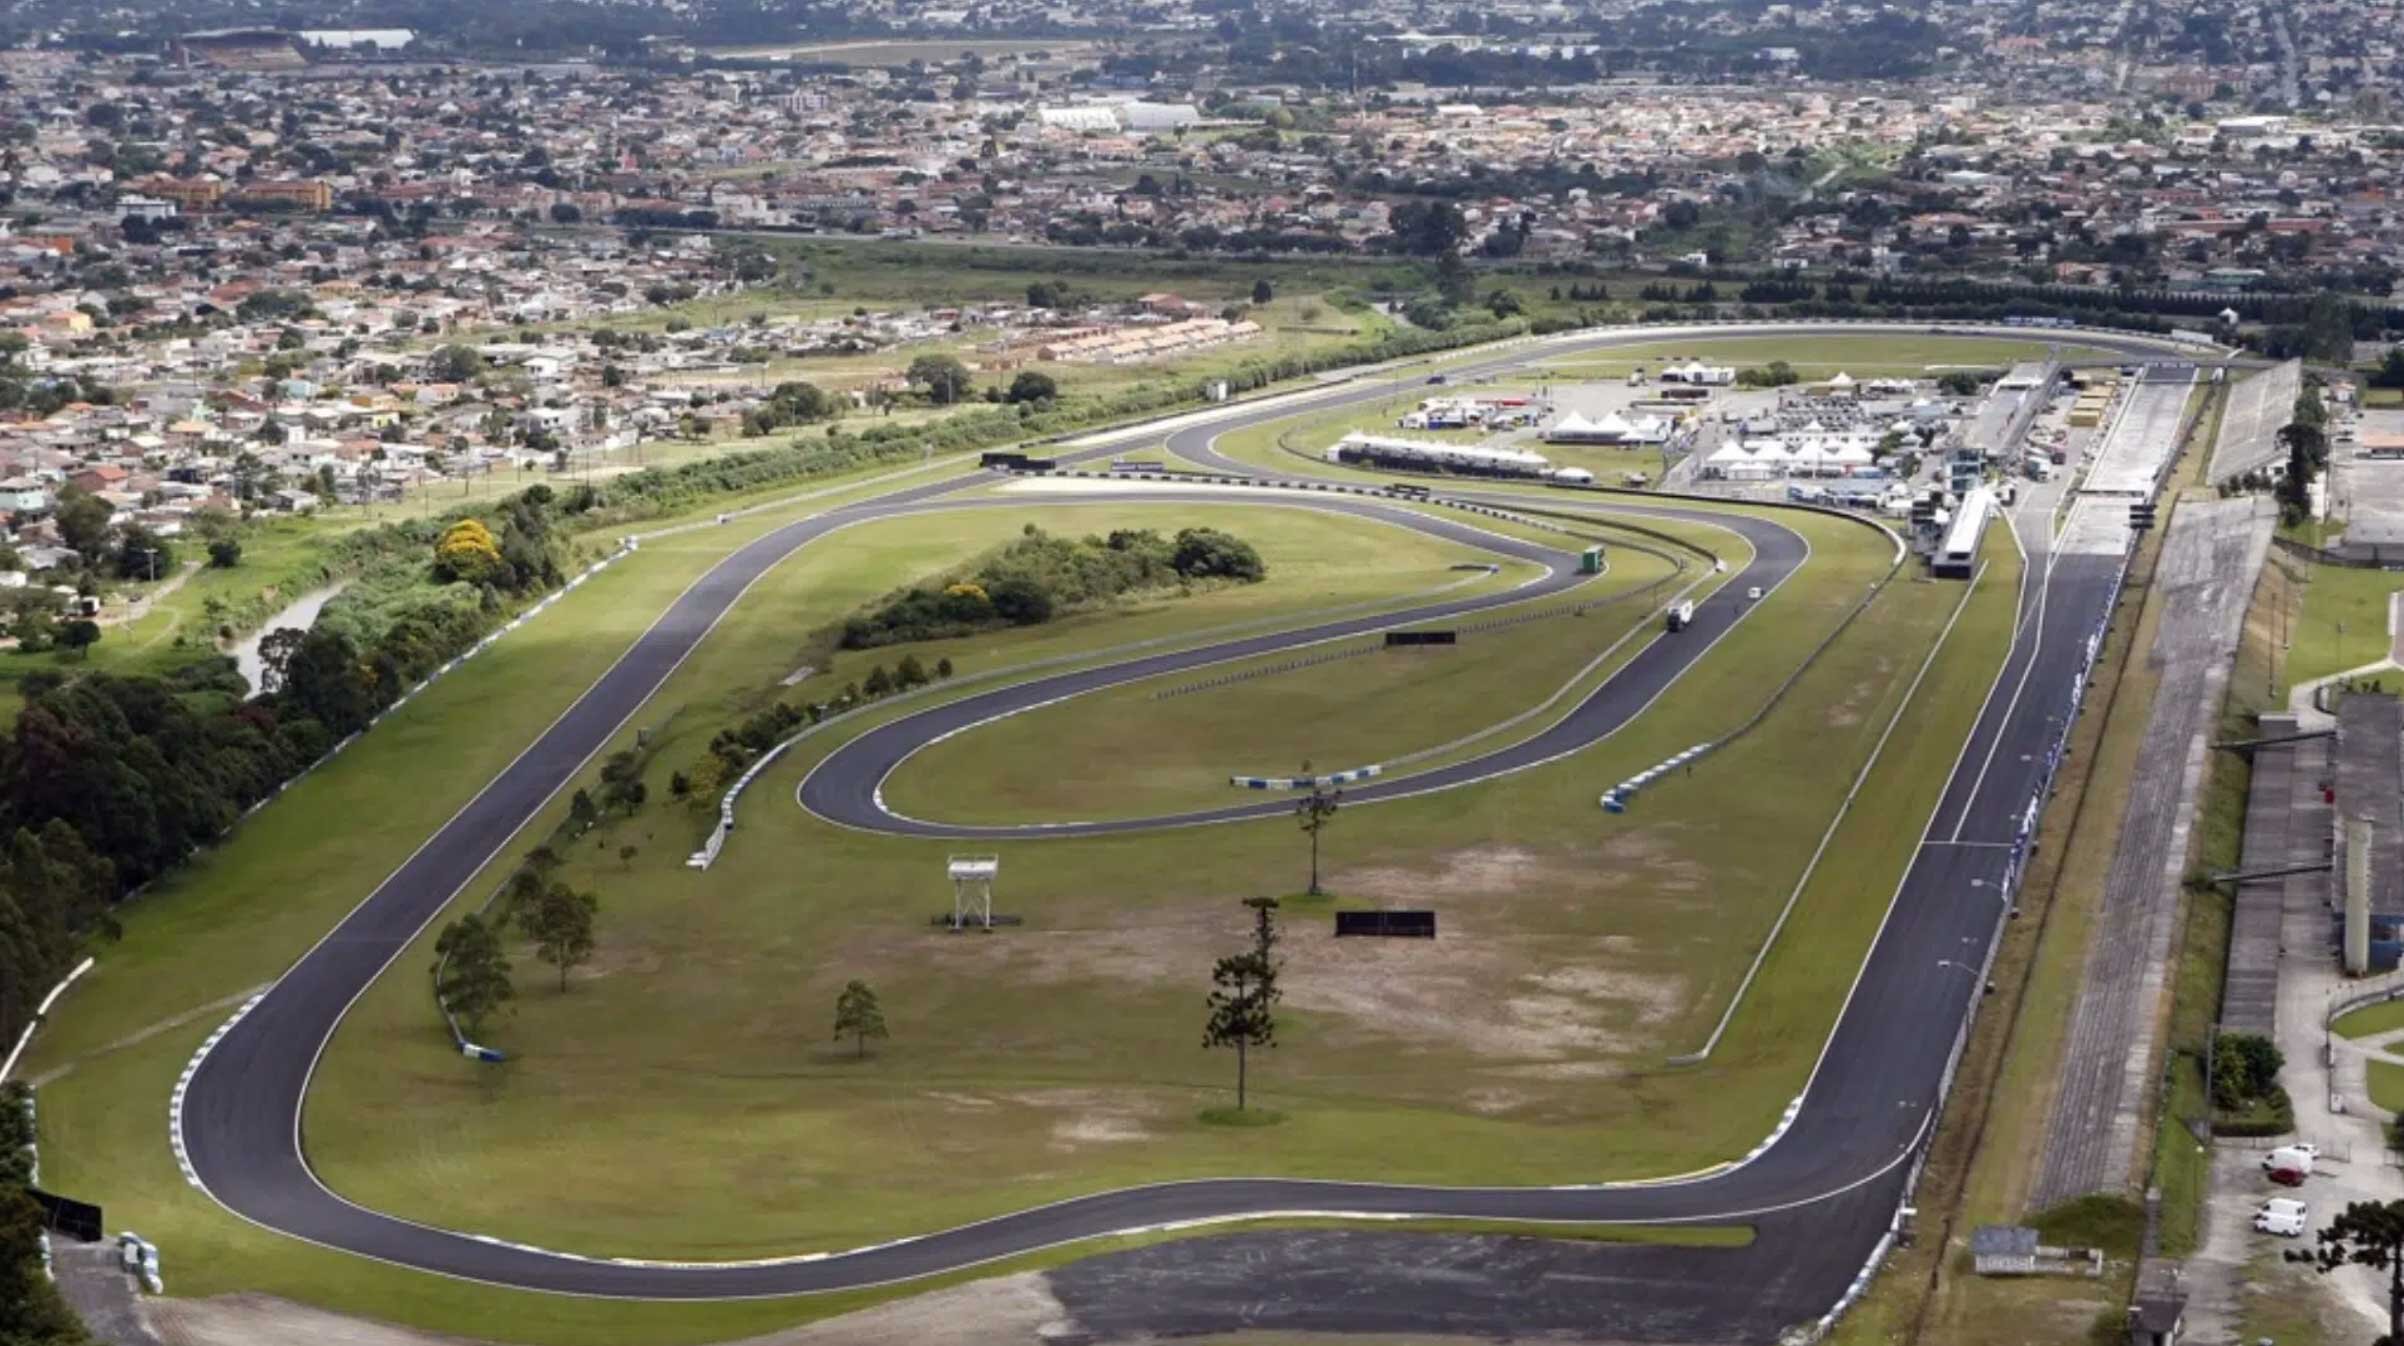 Última corrida no Autódromo - 2021